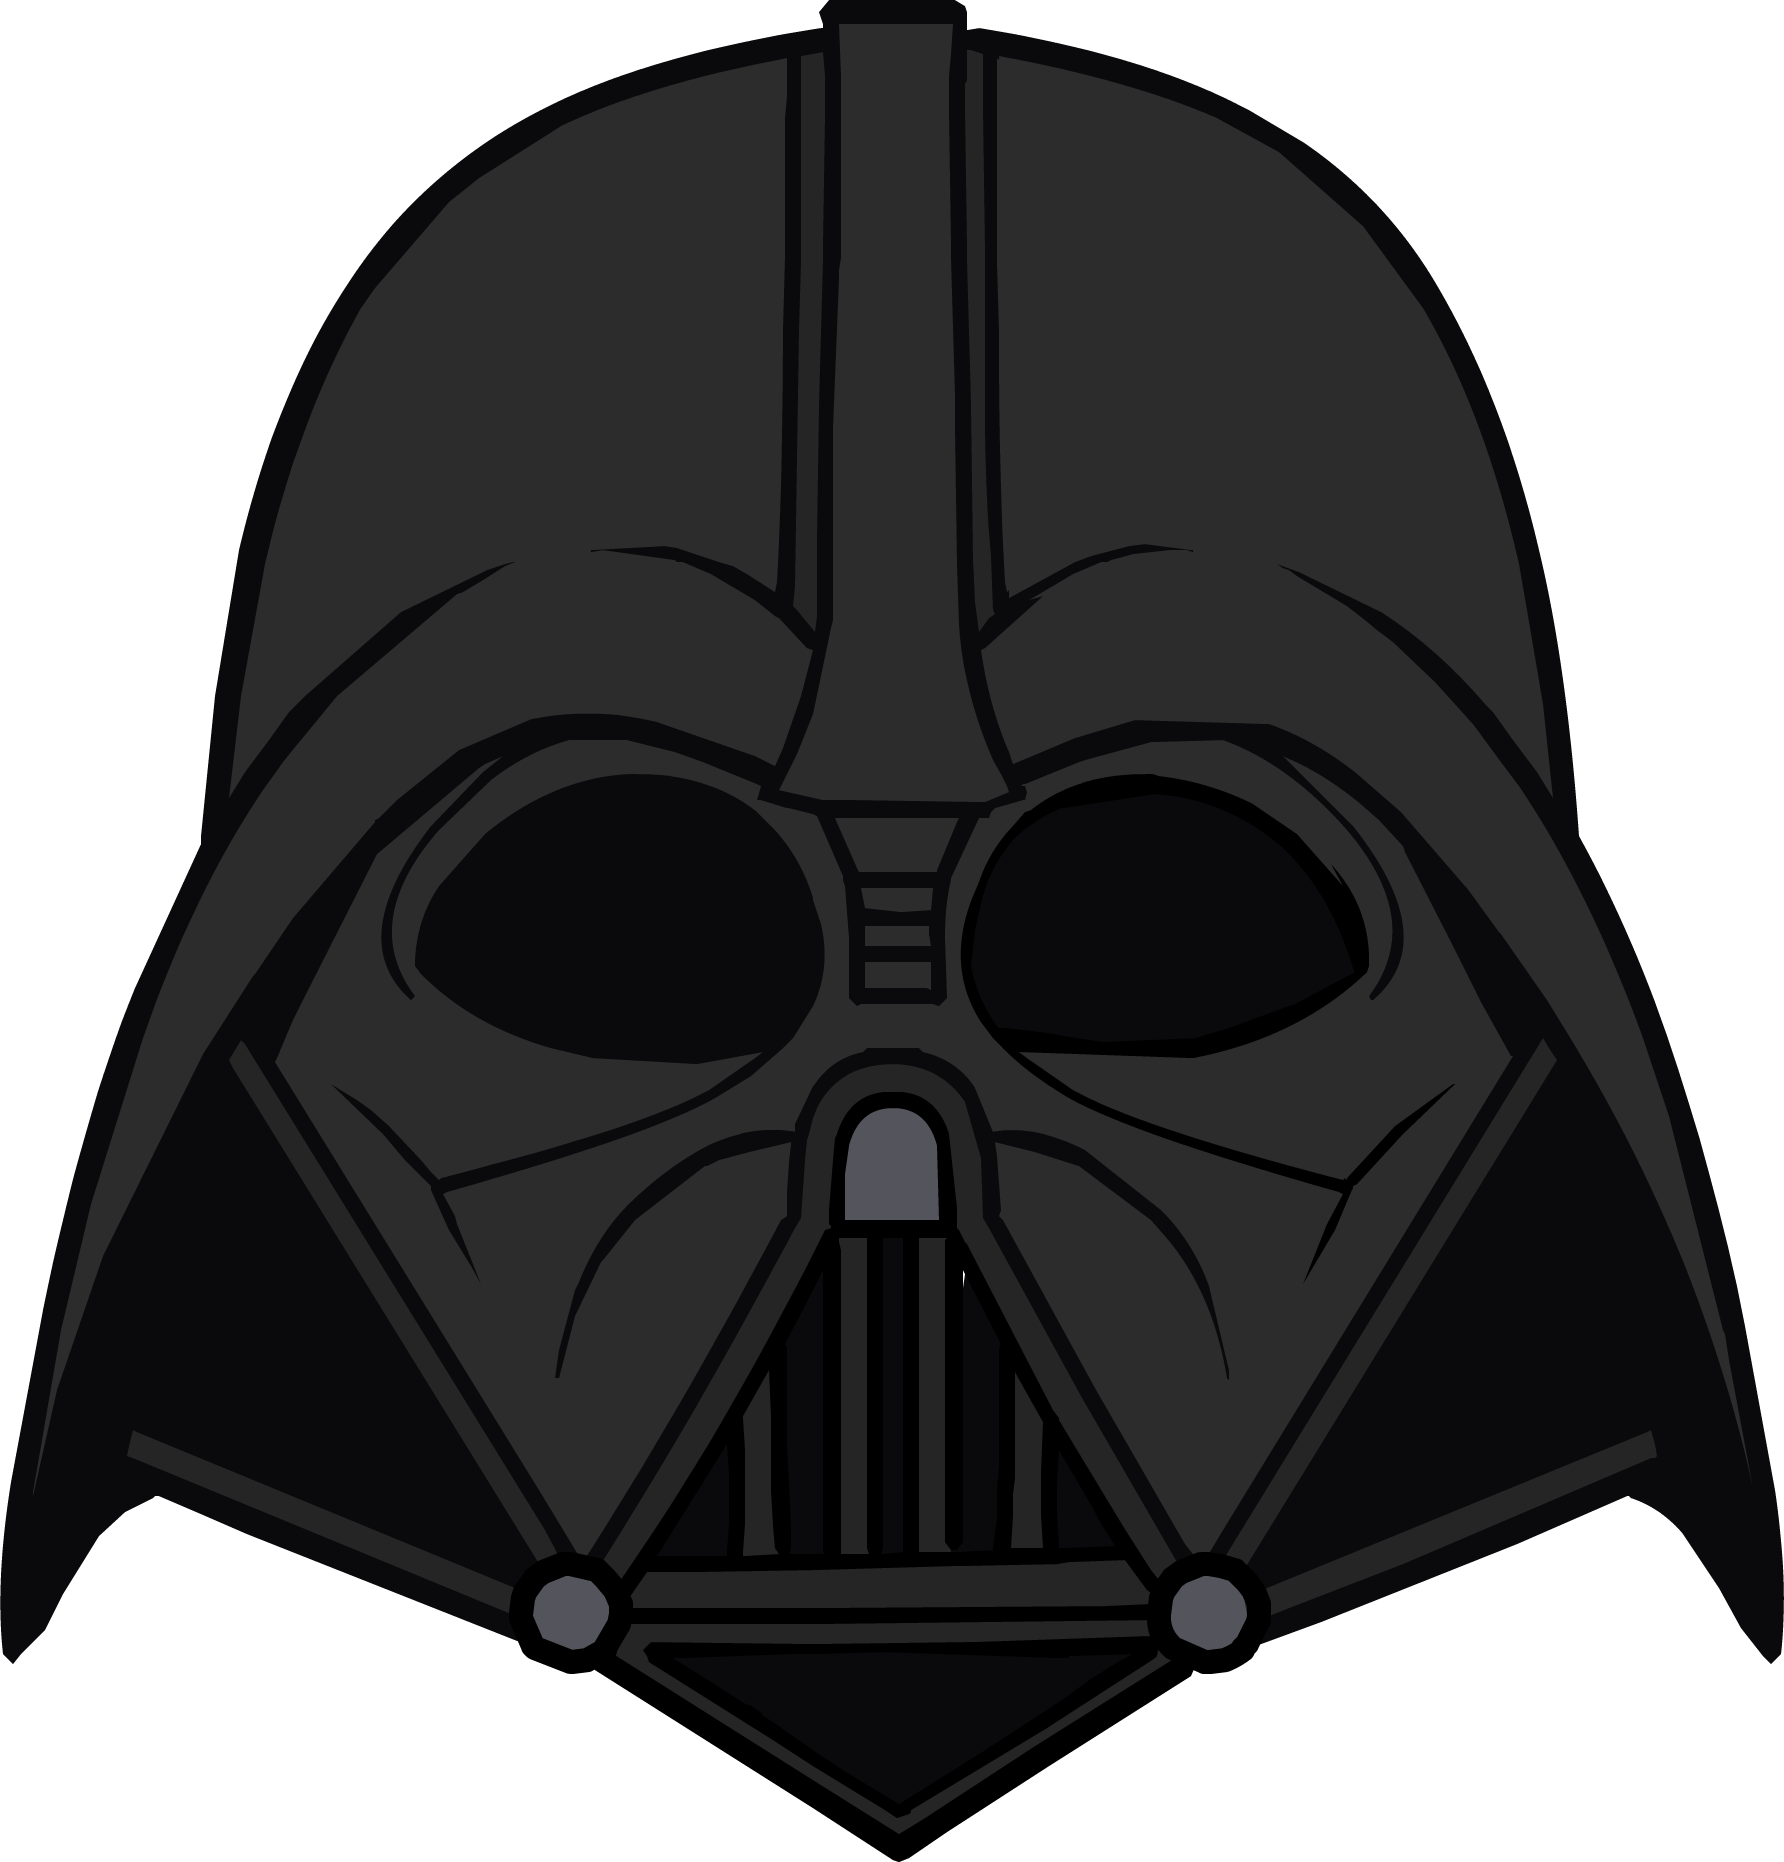 Vader Darth Helmet Download Free Image PNG Image